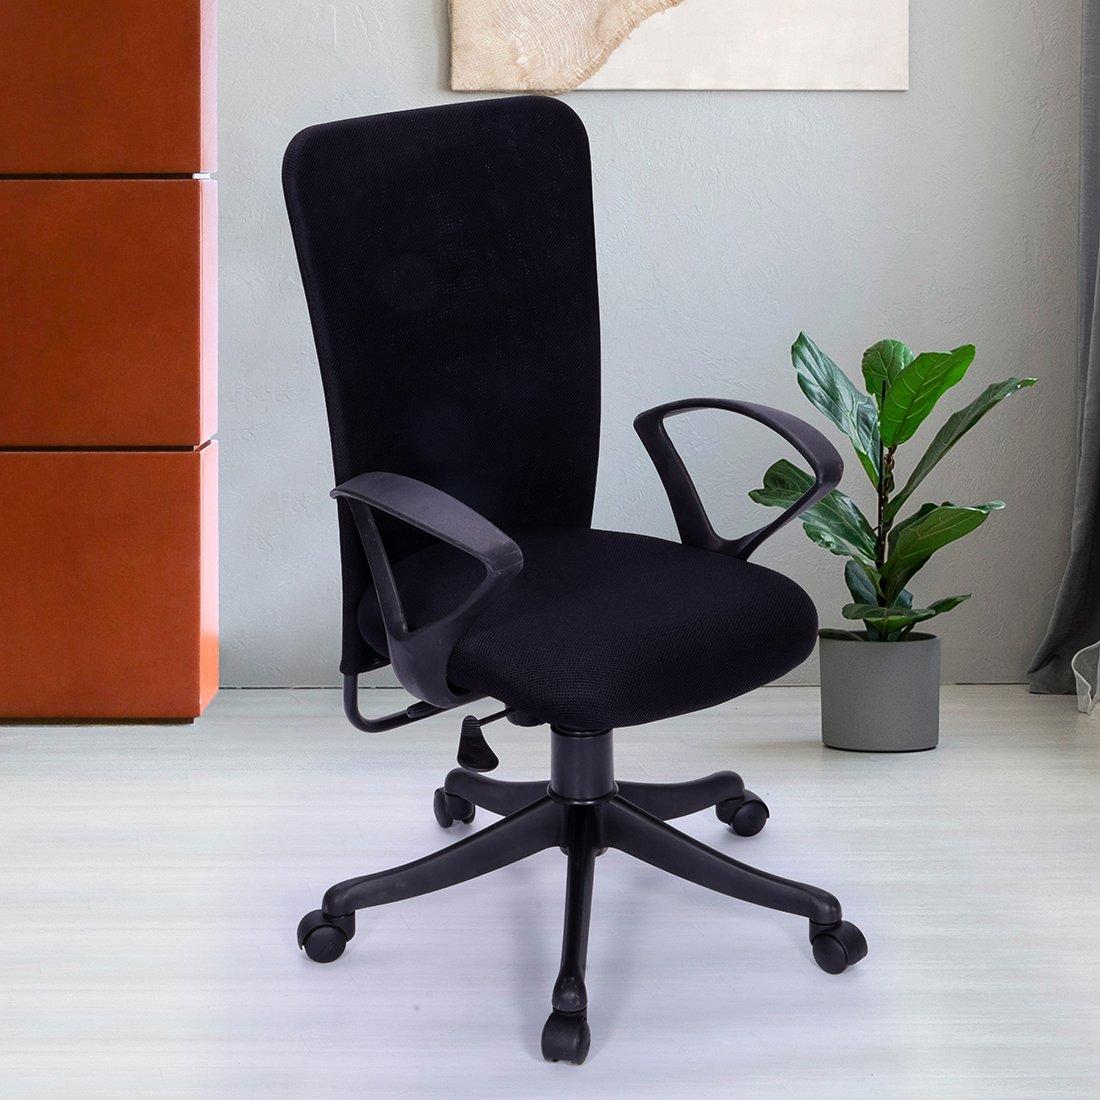 Buy Eric Mid Back Office Chair Black Online Evok